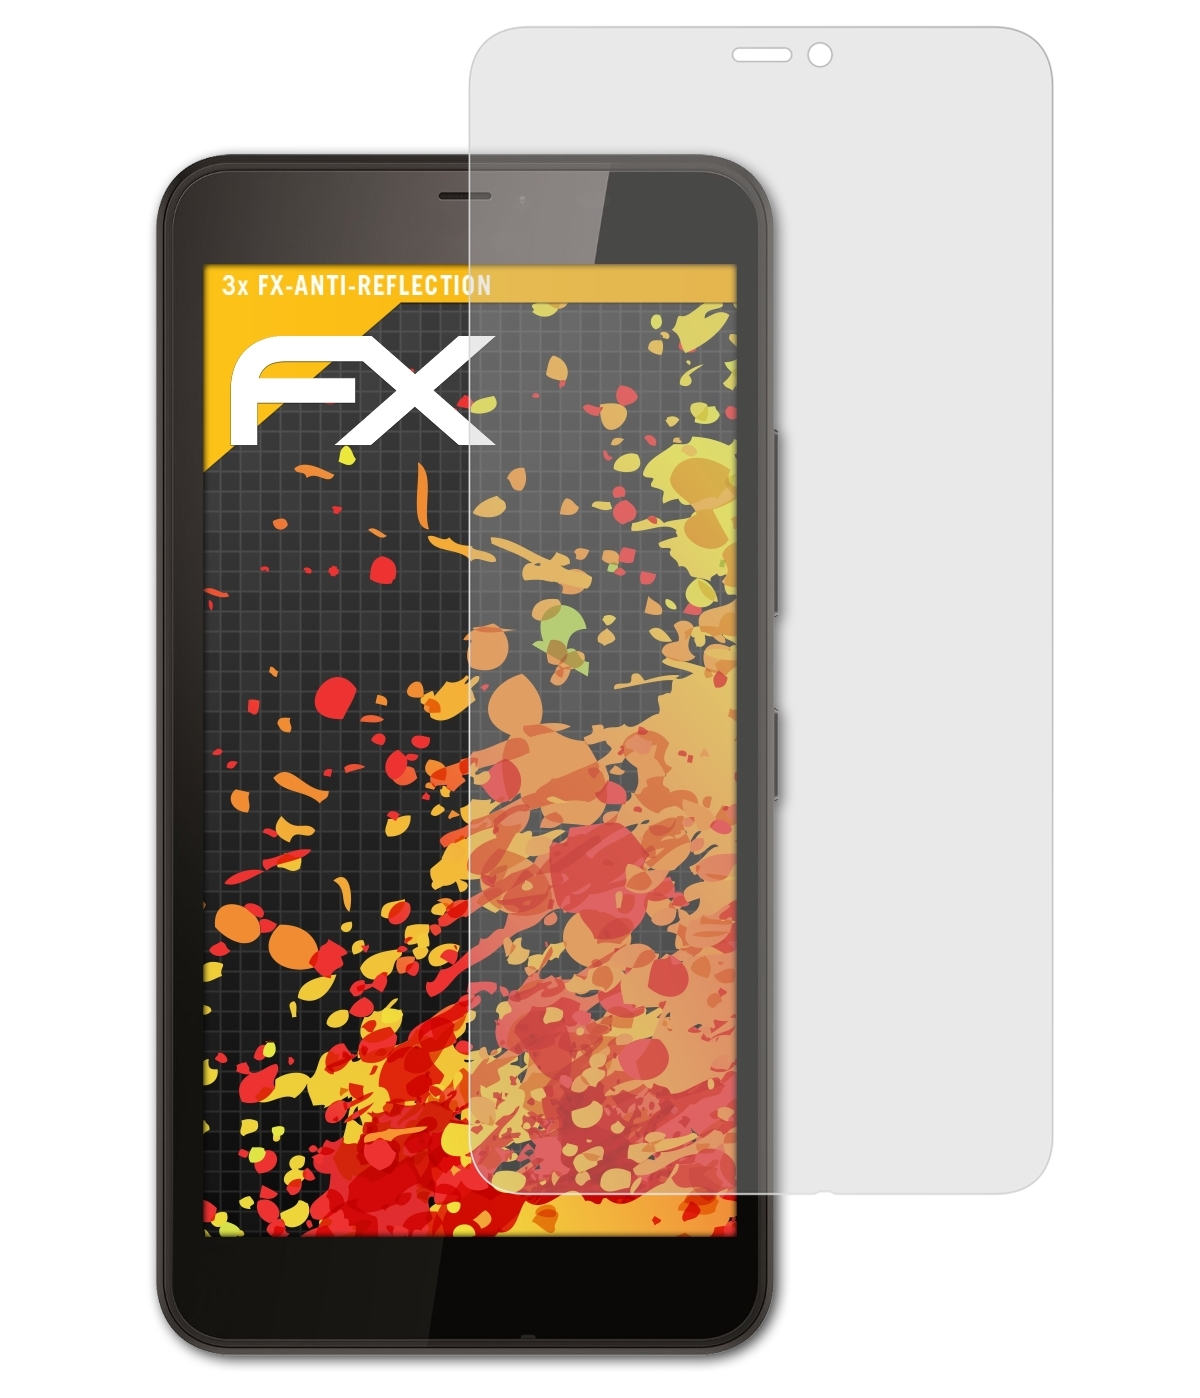 ATFOLIX Microsoft XL) Displayschutz(für Lumia FX-Antireflex 3x 640